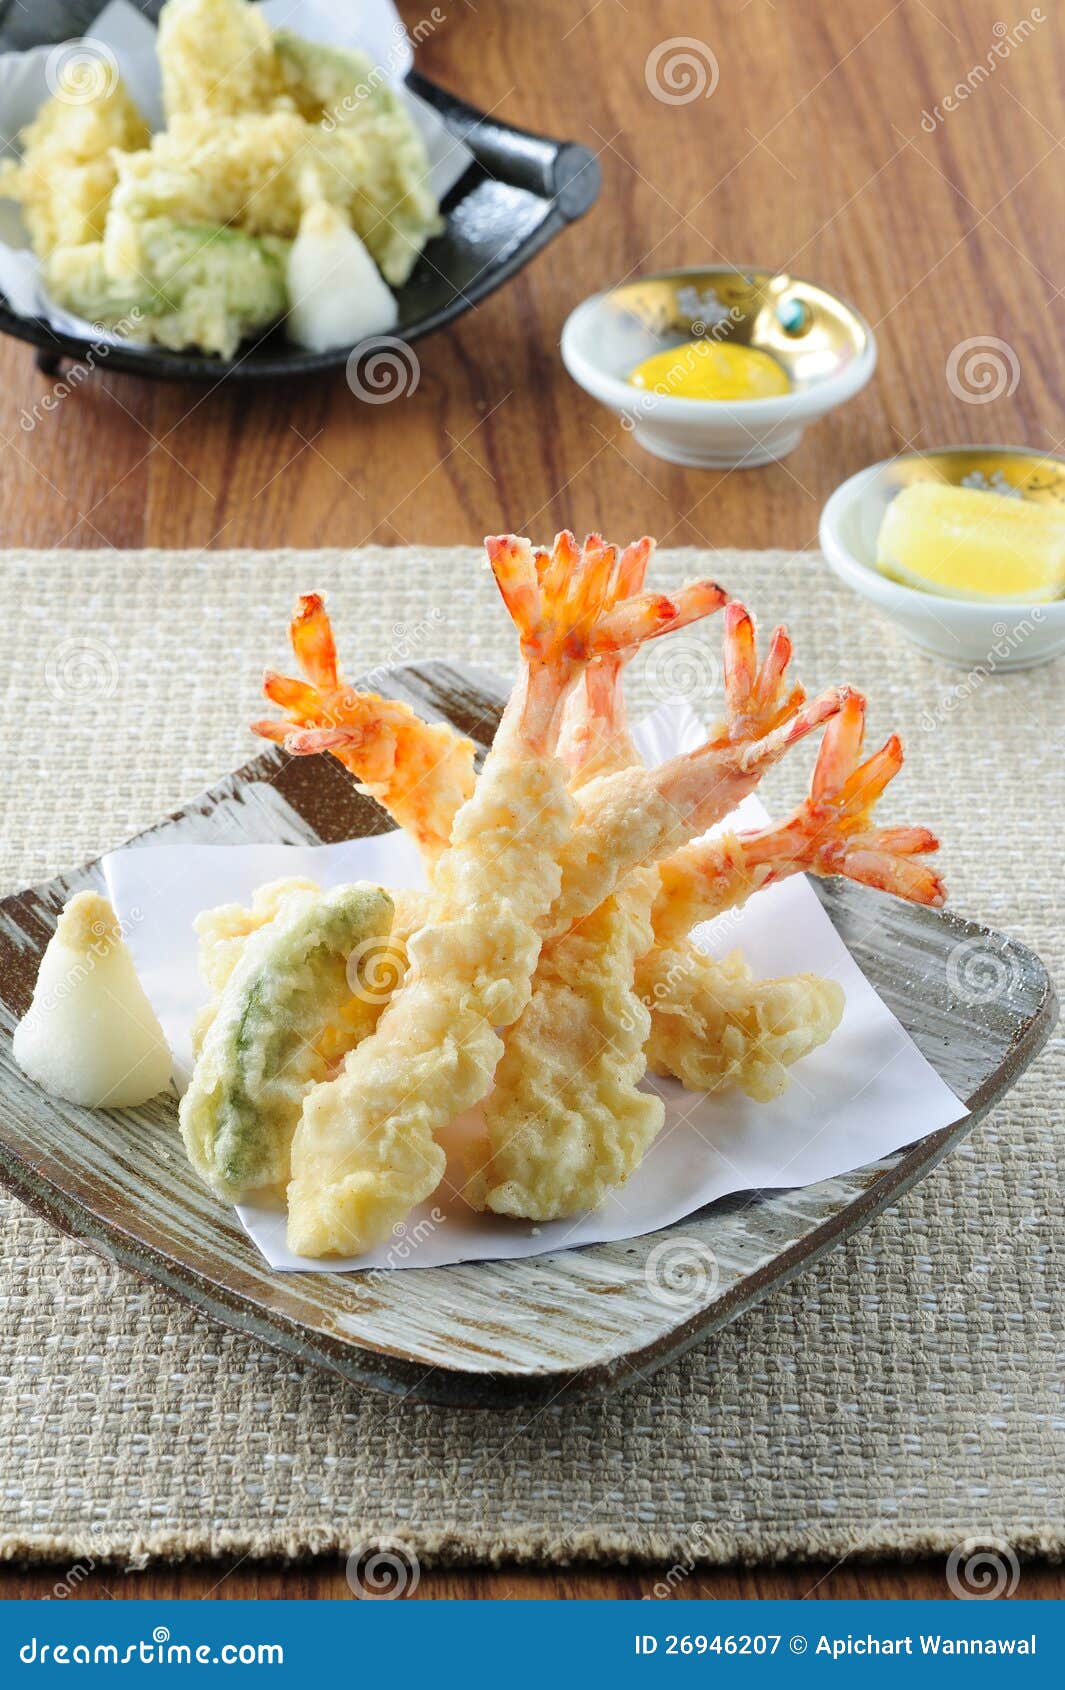 Tempura Fried Shrimp Japanese Style Stock Image - Image of food ...